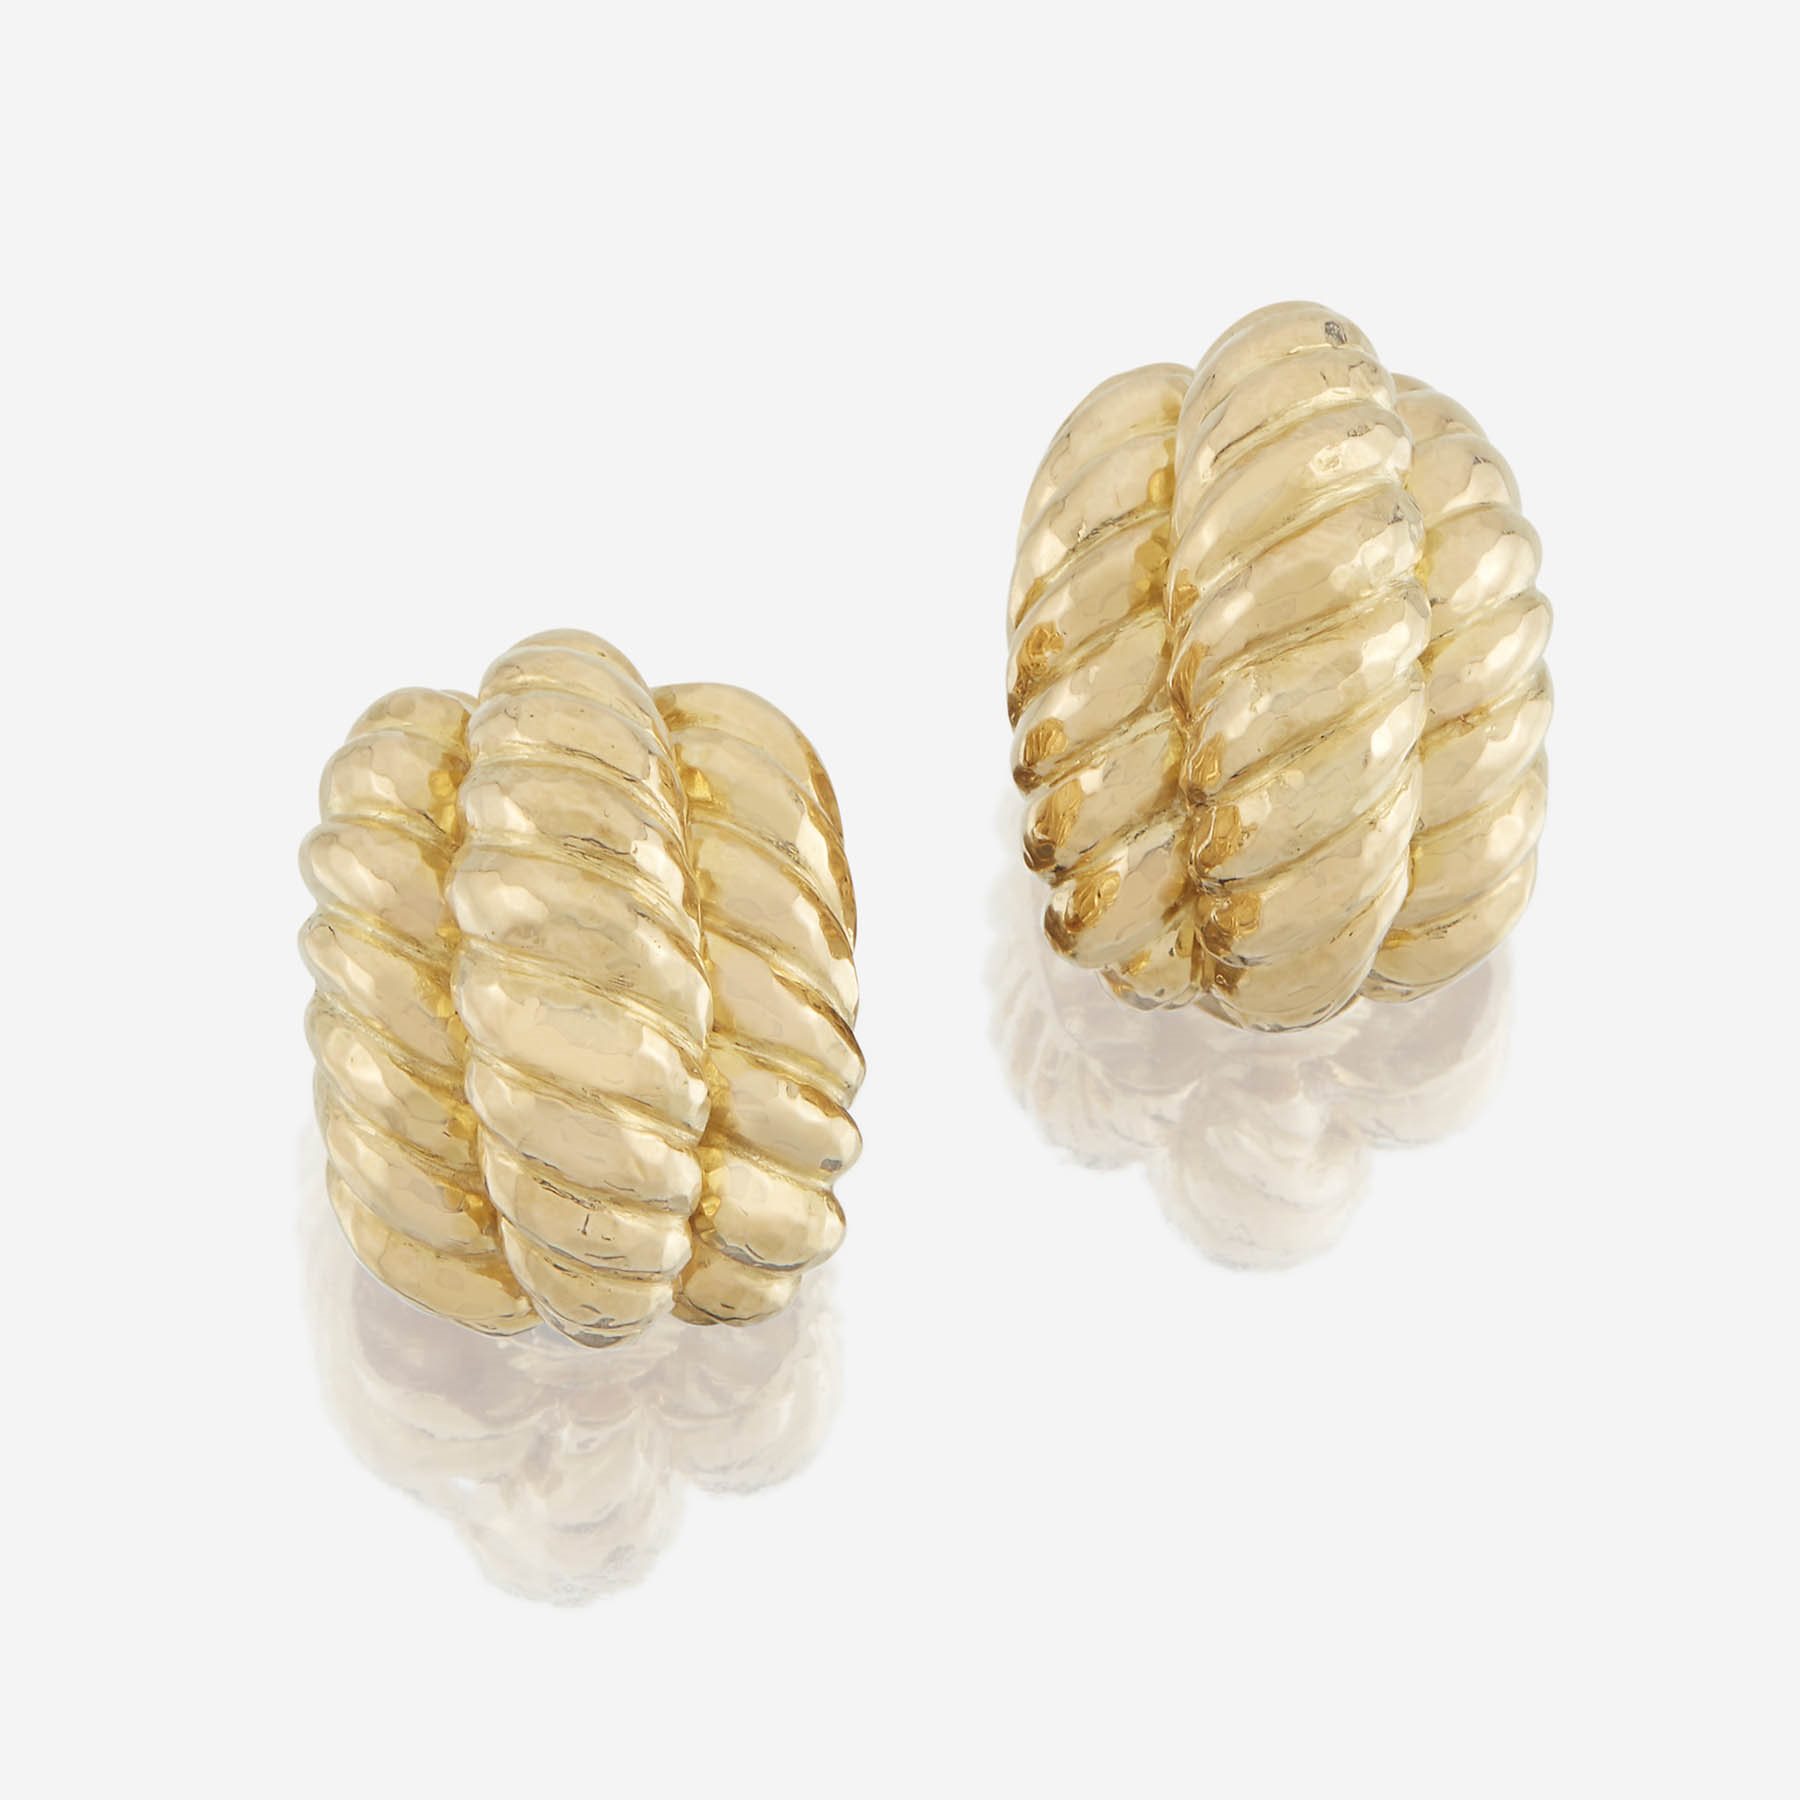 A pair of eighteen karat gold earrings, David Webb